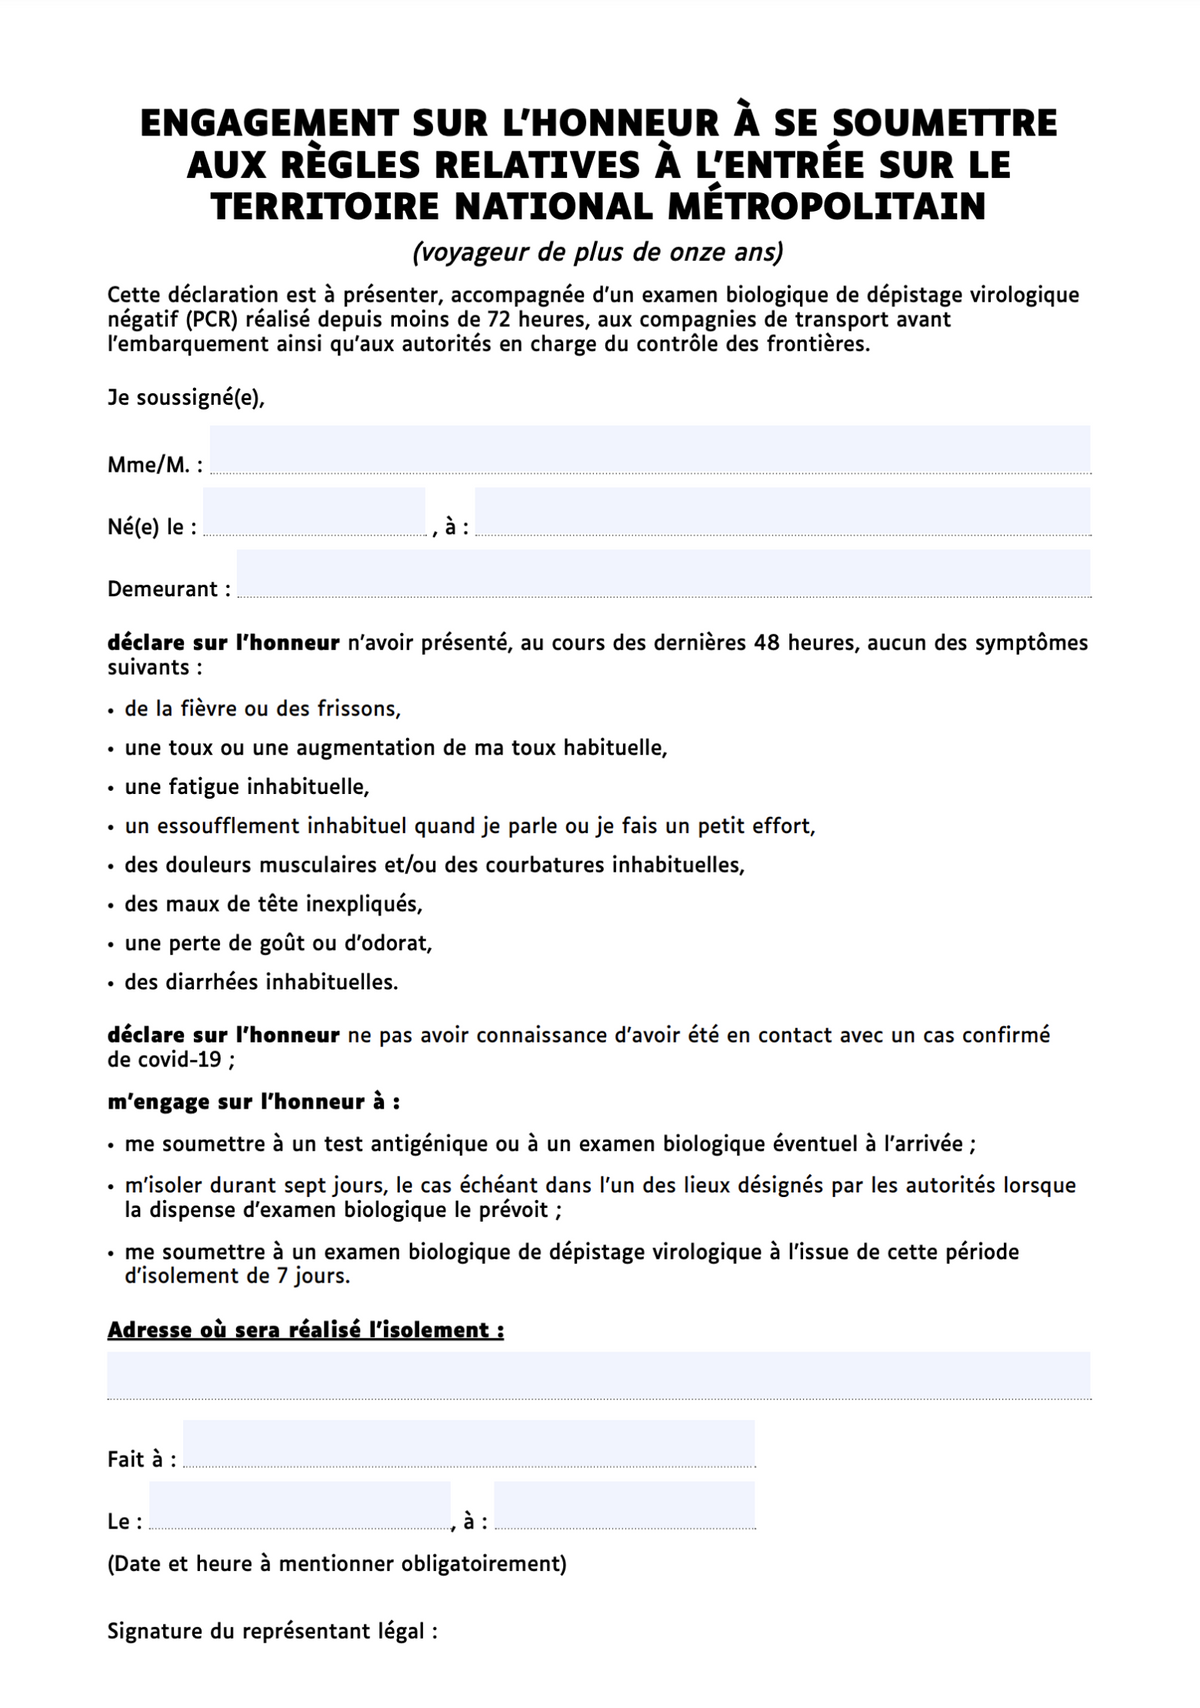 Форма декларации для&nbsp;путешественников во Франции. Источник: interieur.gov.fr